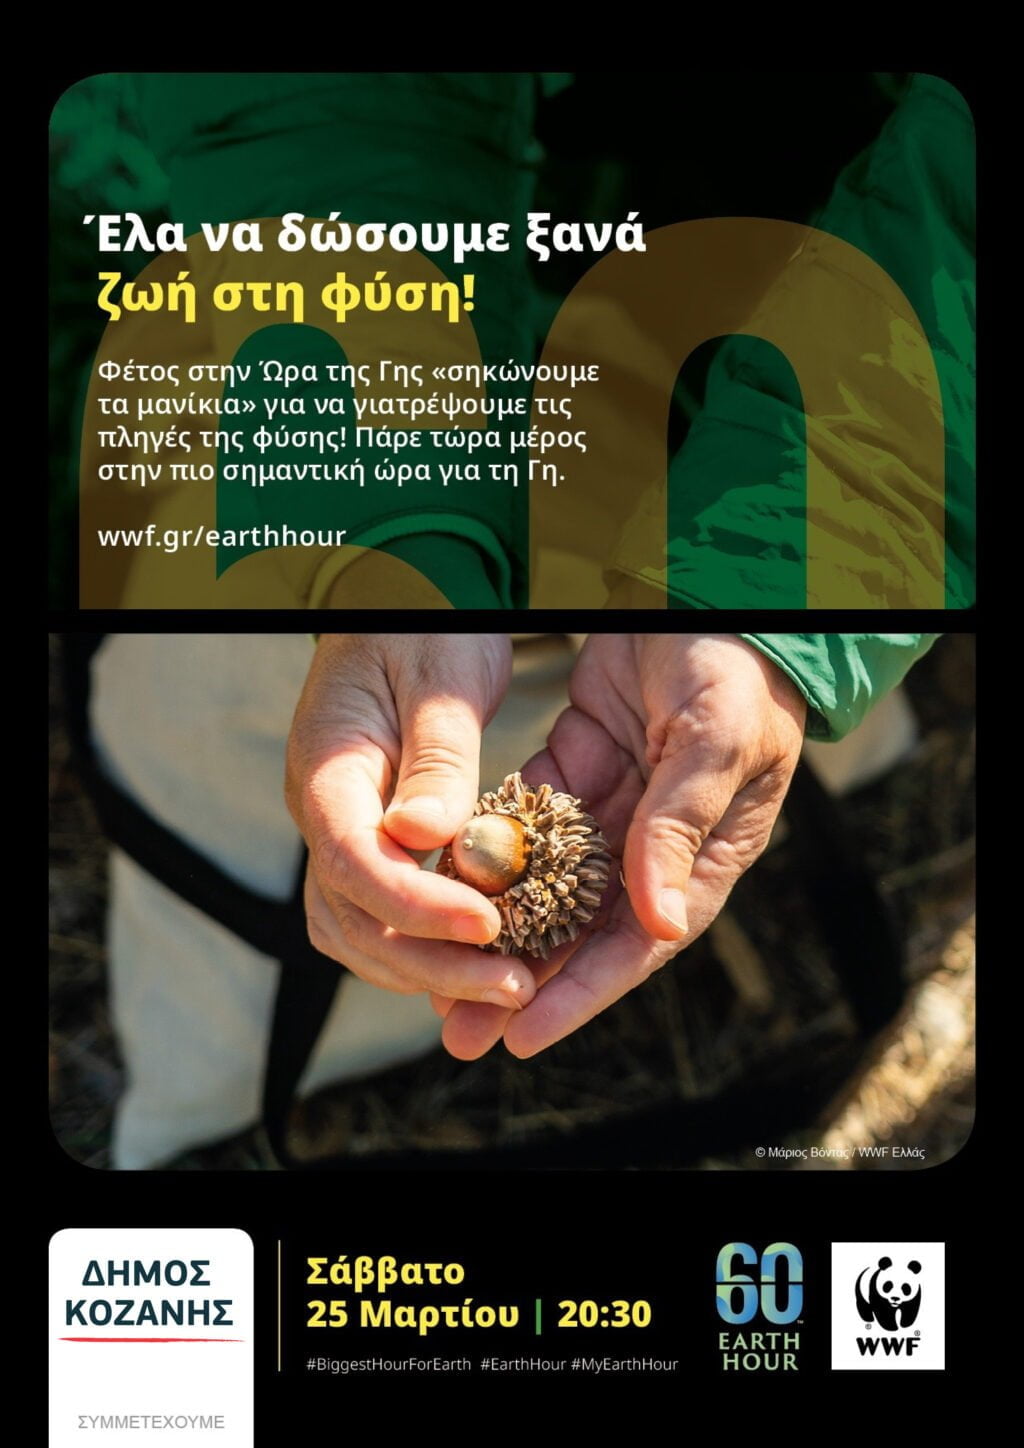 Δήμος Κοζάνης: Συμμετέχουμε και φέτος στην «Ώρα της Γης» διαθέτοντας 60 πολύτιμα λεπτά σε δράσεις που θα συμβάλλουν στην αποκατάσταση της φύσης